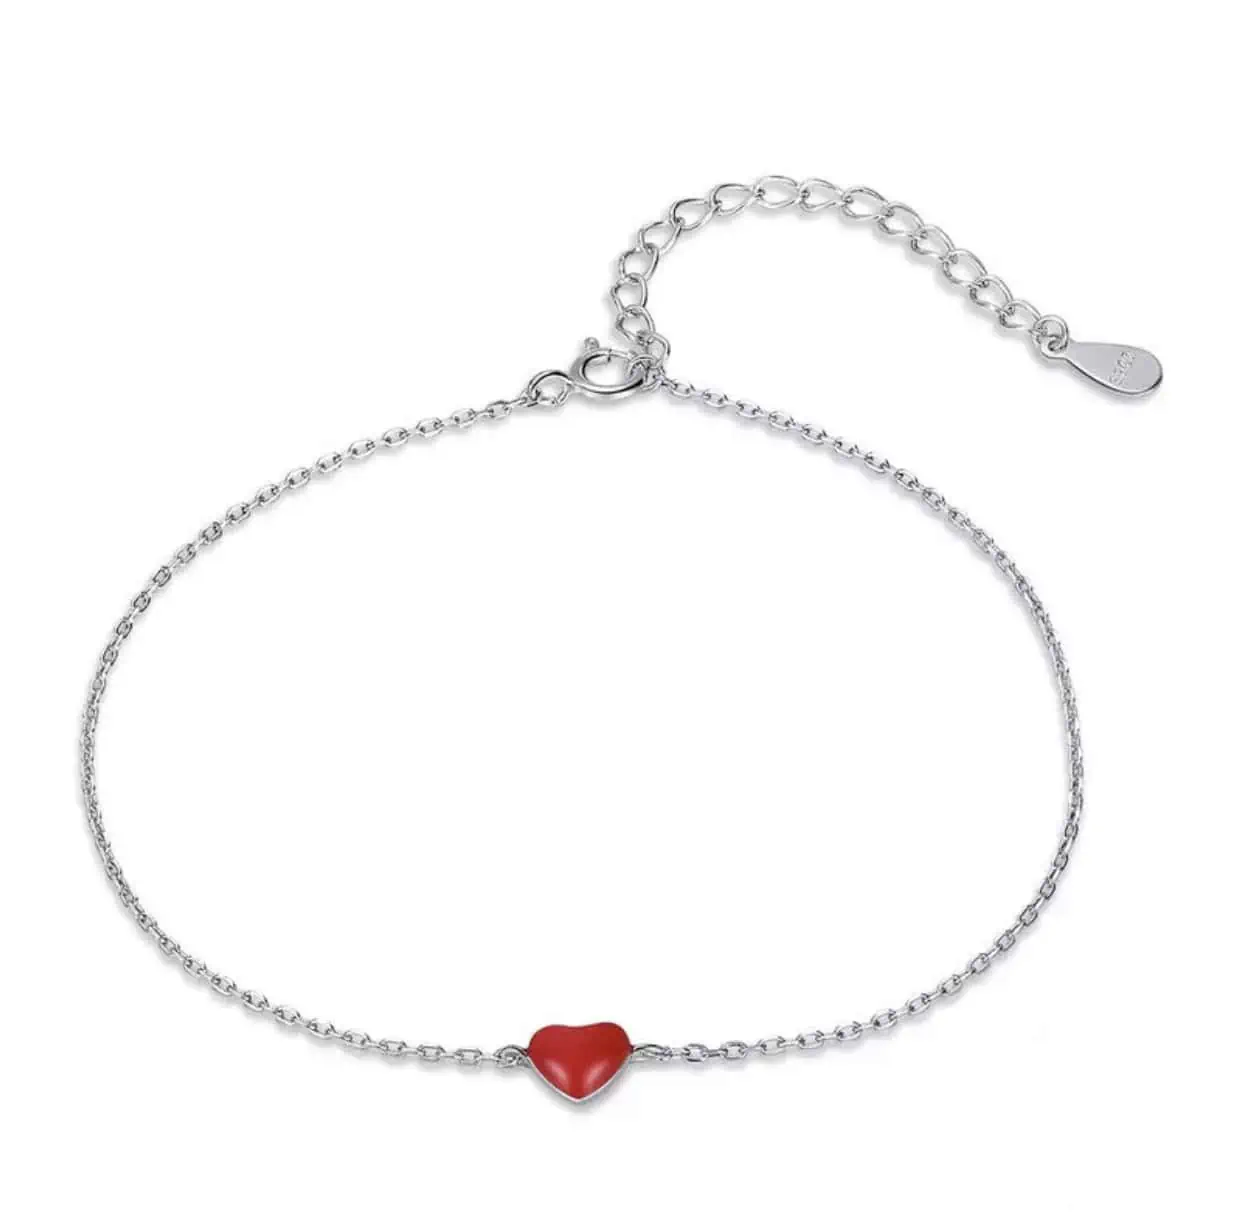 Product Afbeelding Bovenaanzicht van onze prachtige armband met slotje. Deze lieve armband heeft een klein rood hartje in het midden gemaakt van rode emaille en 925 sterling zilver.